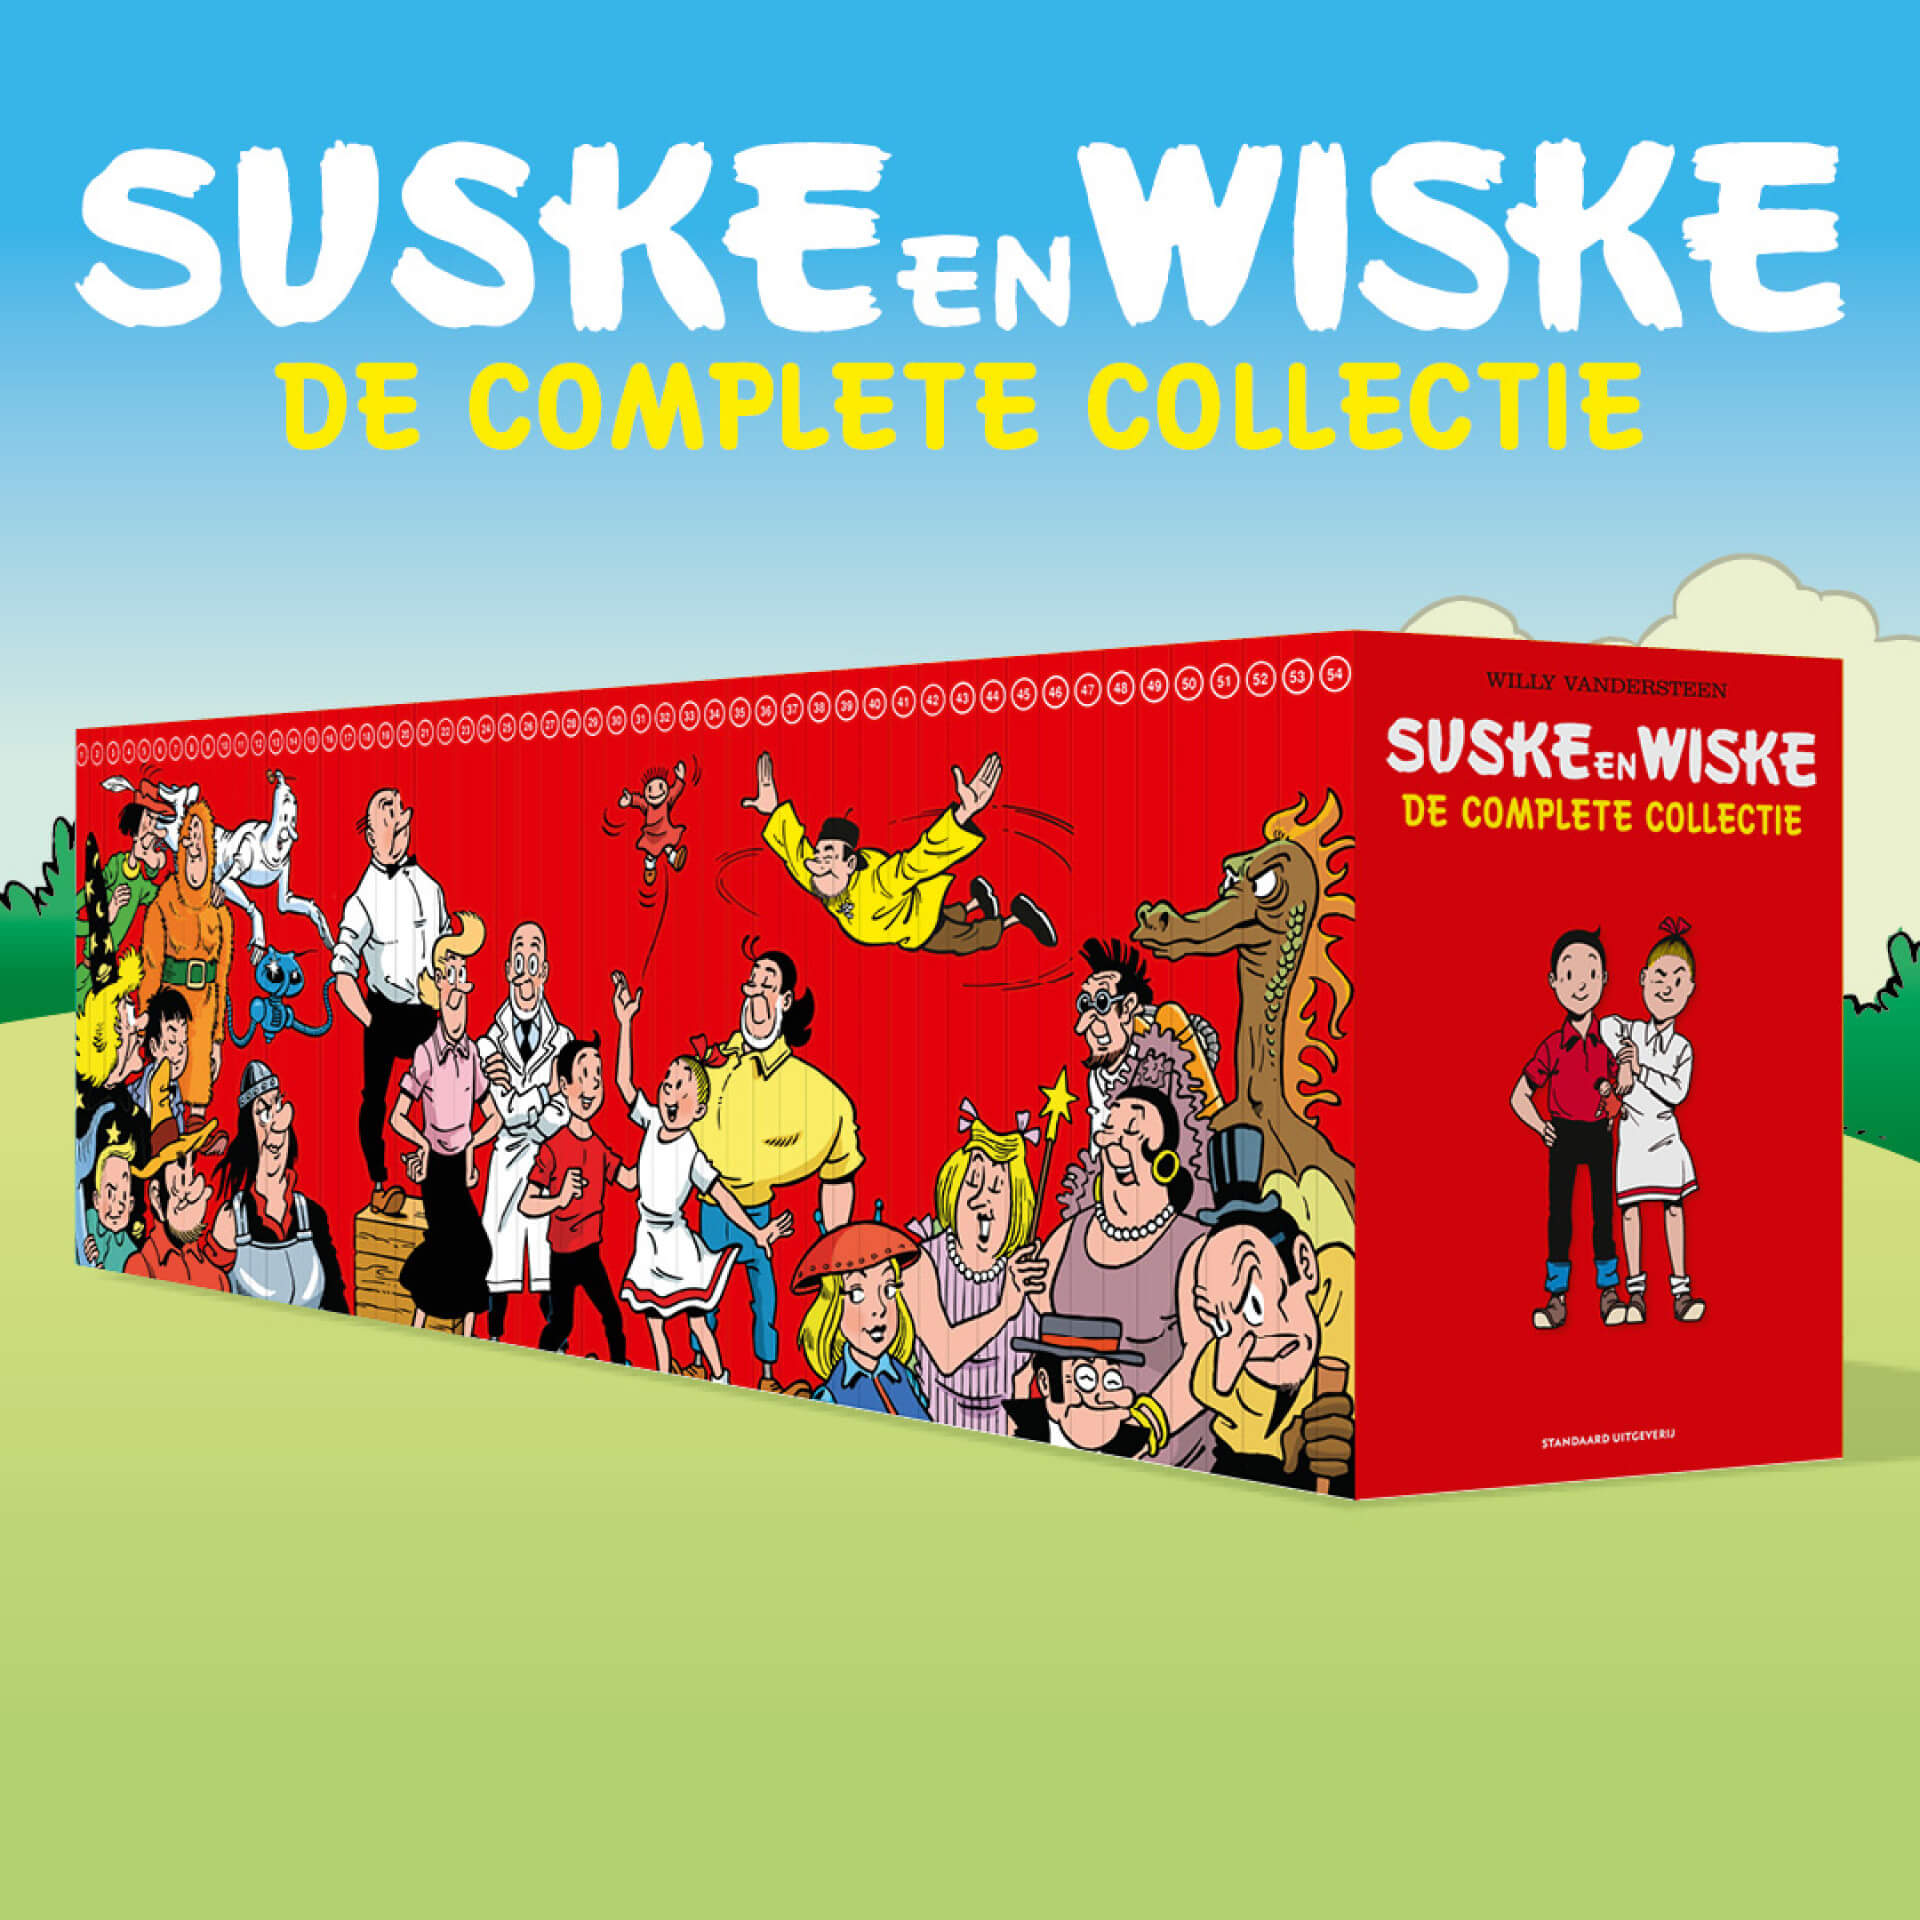 Suske en Wiske, collectie, complete uitgave, 75 jaar, de complete editie, leesplezier